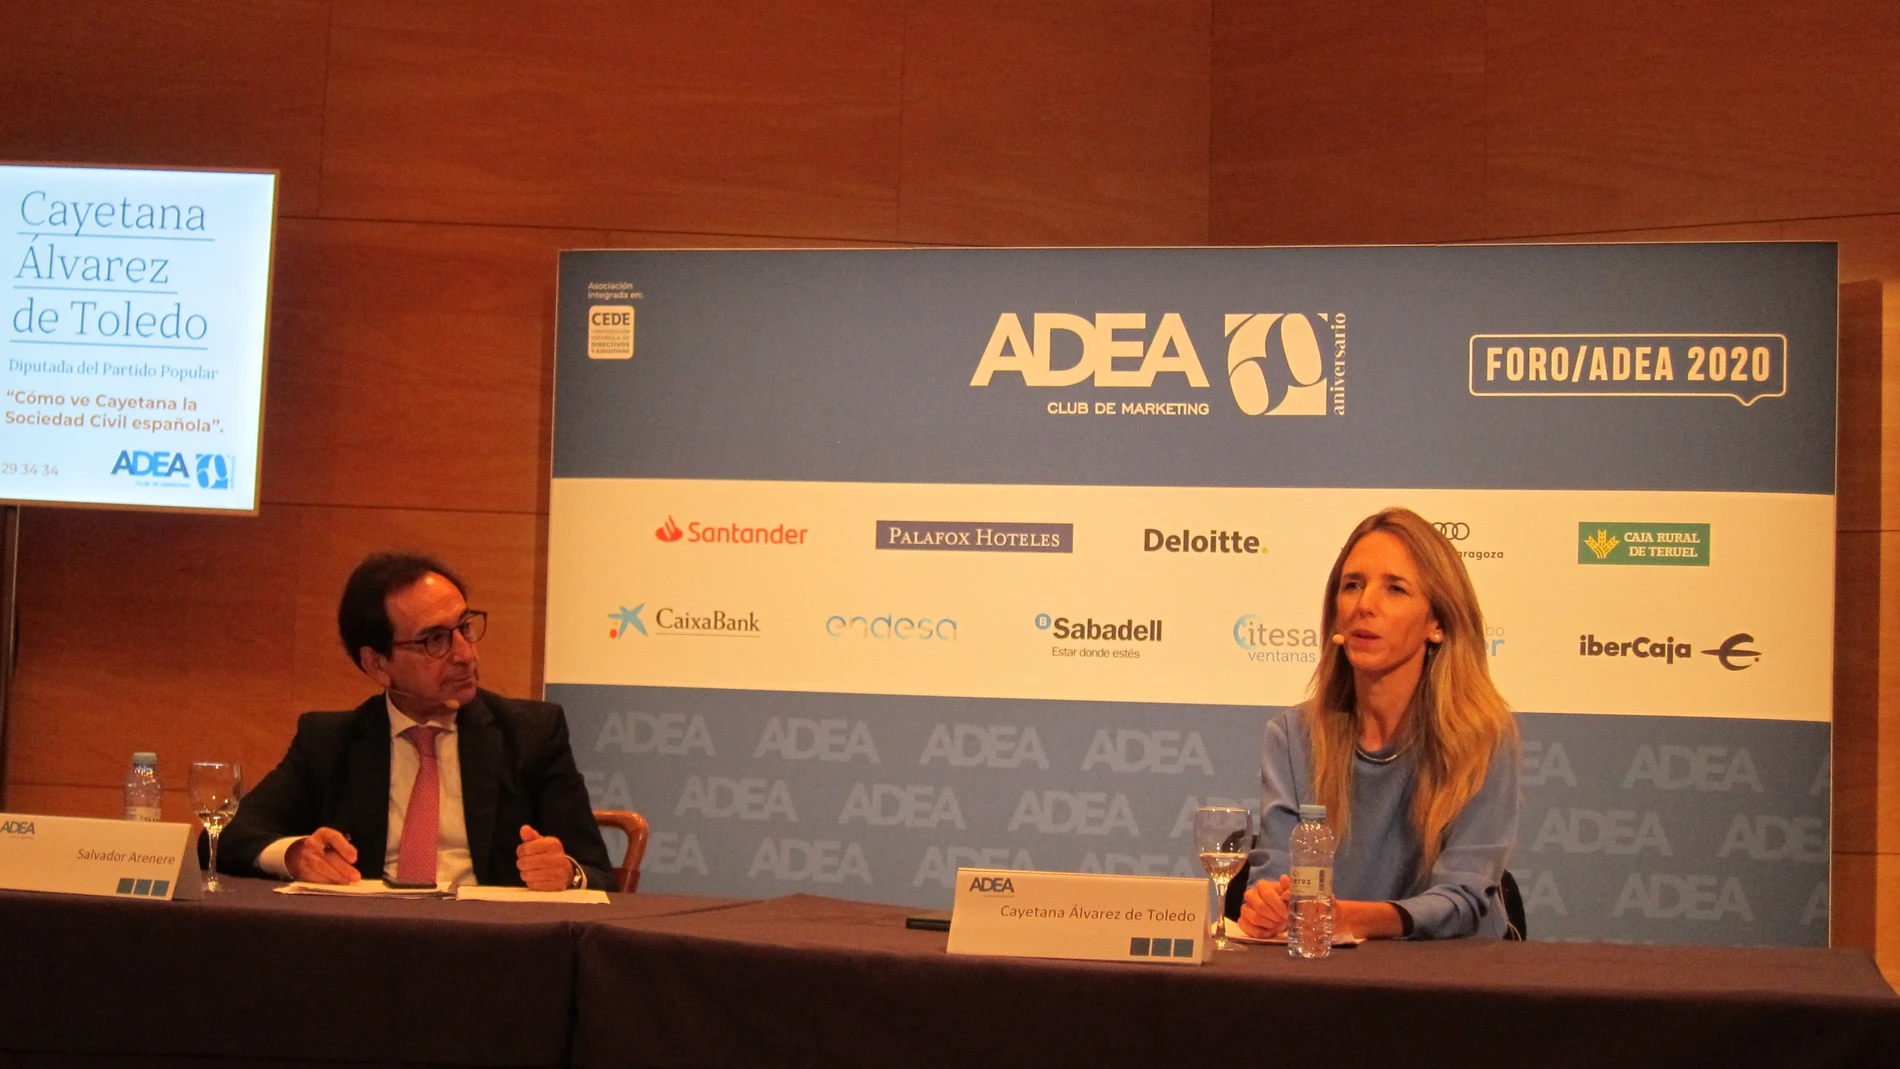 La diputada del PP en el Congreso Cayetana Álvarez de Toledo participa en el Foro ADEA, en Zaragoza, organizado por la Asociación de Directivos y Ejecutivos de Aragón.EUROPA PRESS23/10/2020